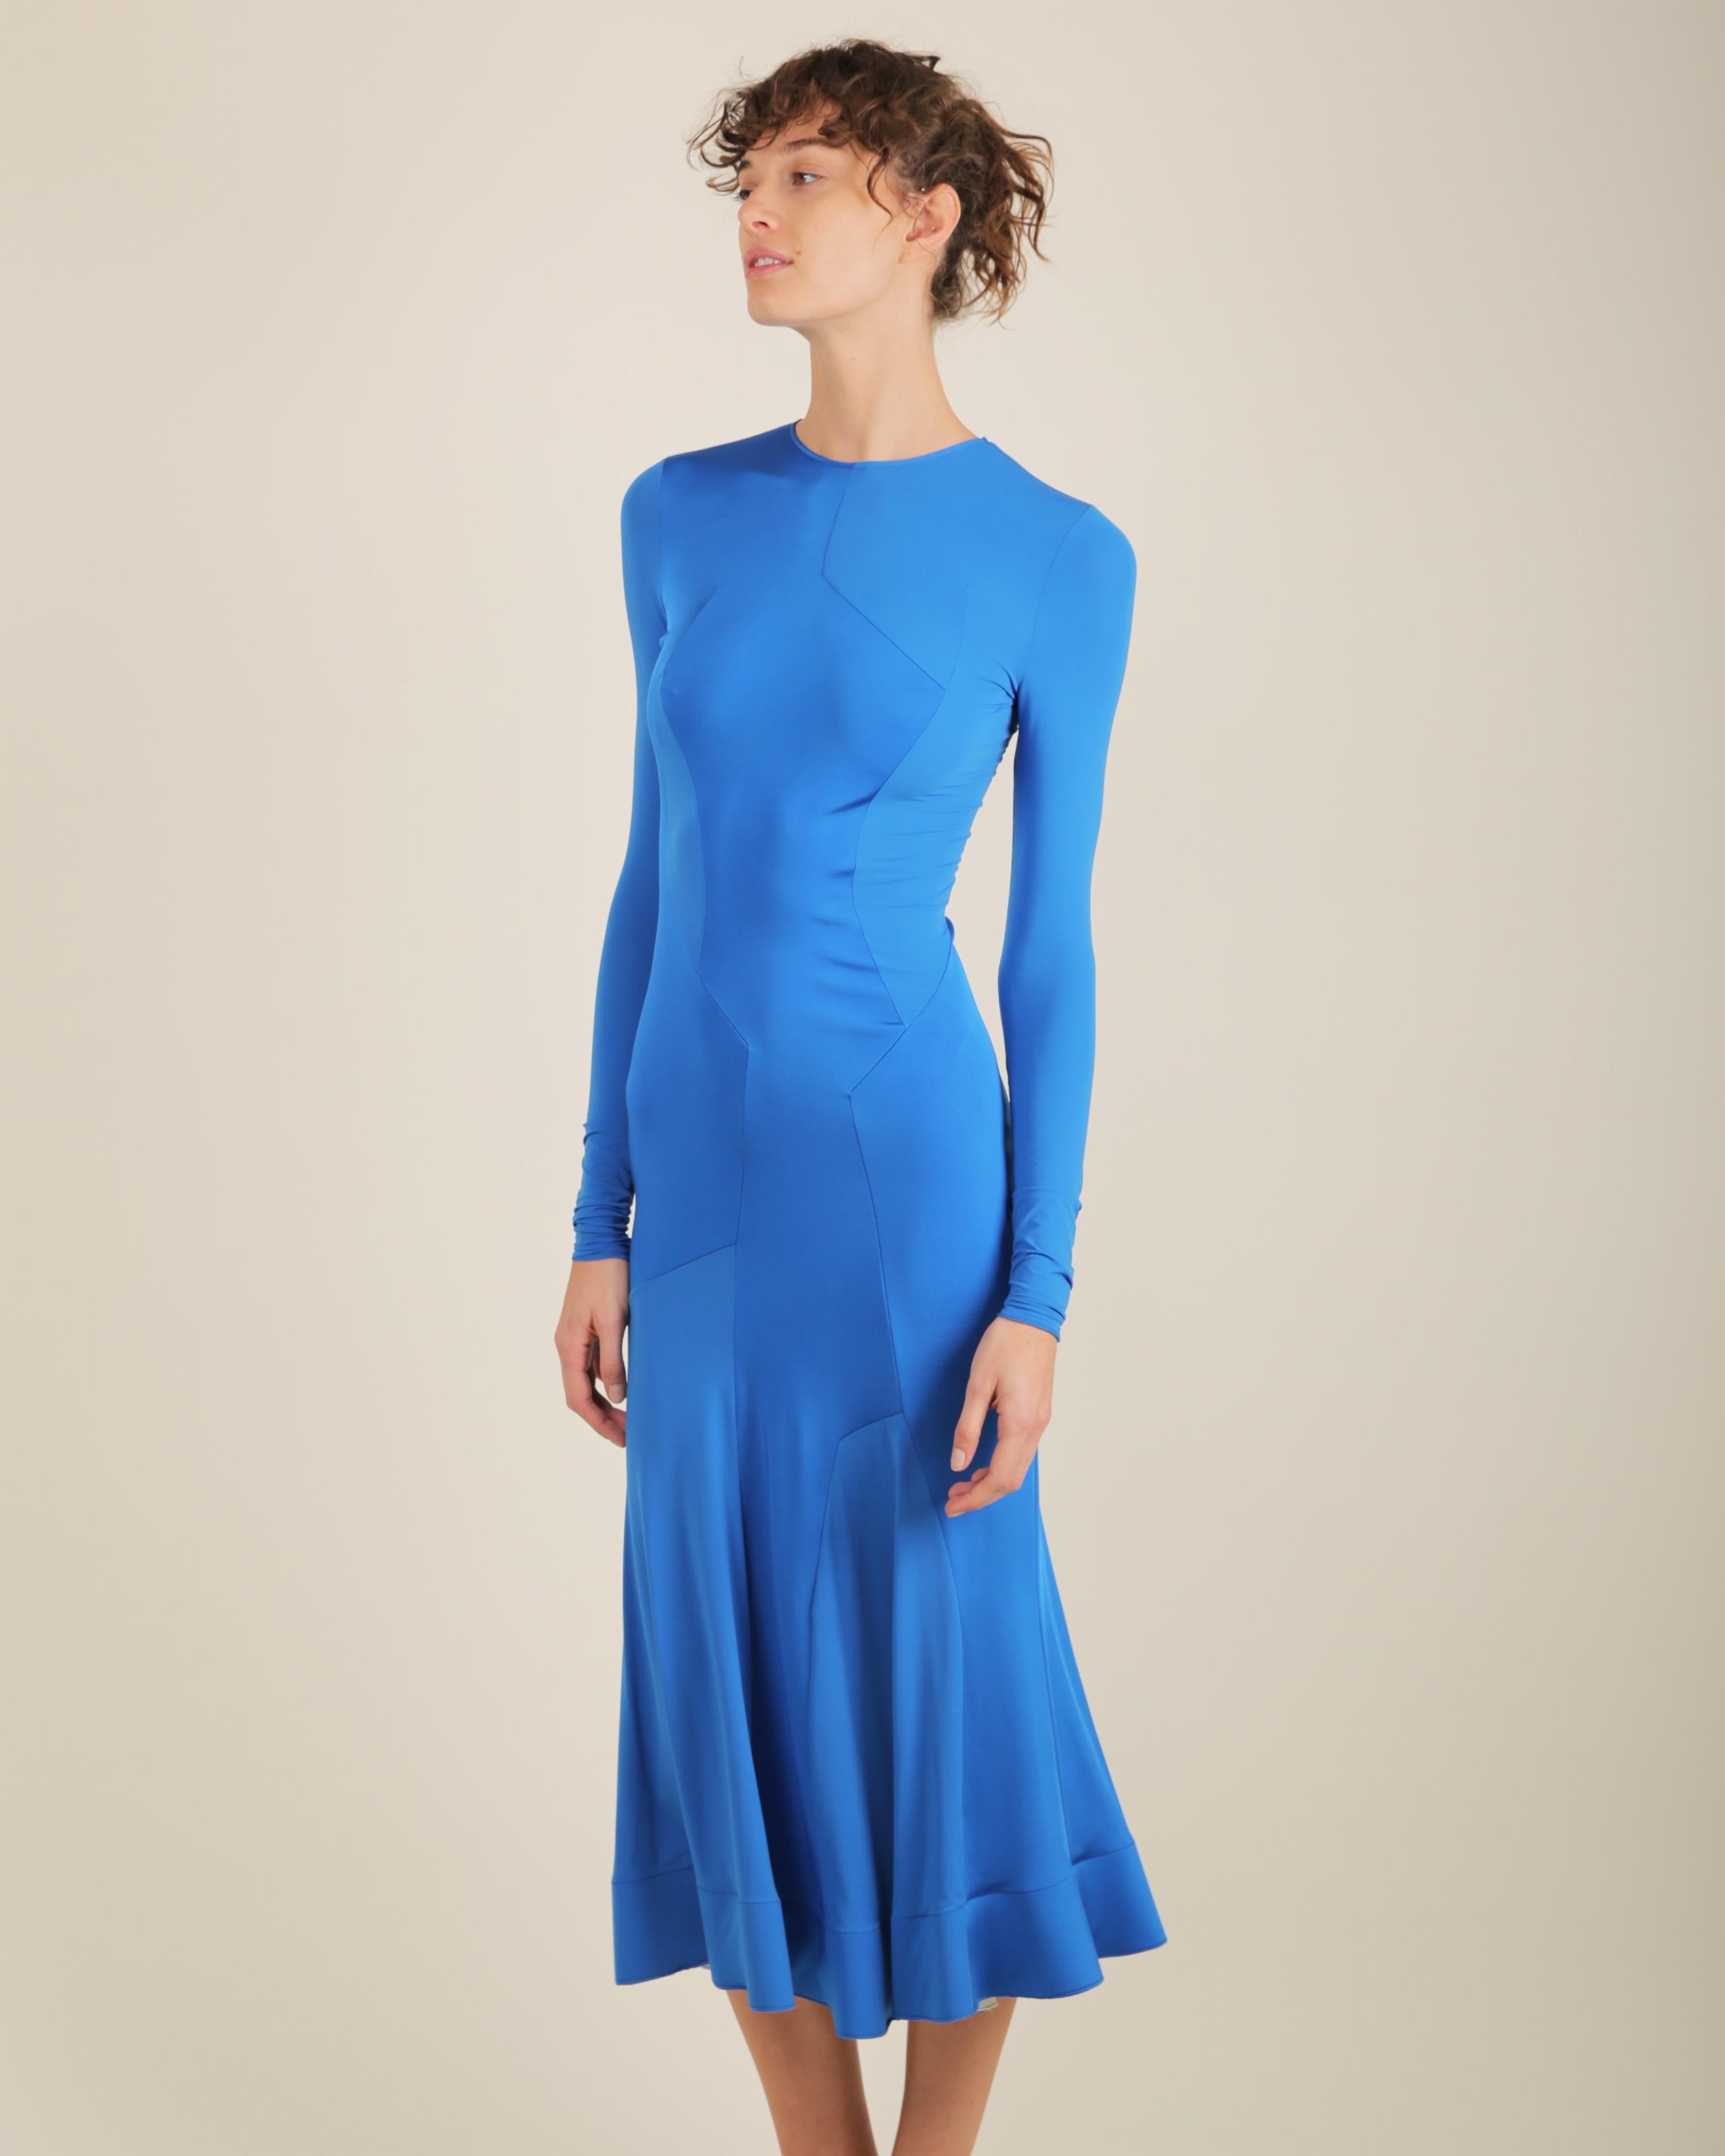 Women's Esteban Cortazar electric blue long sleeve flared midi stretch dress FR 34 For Sale